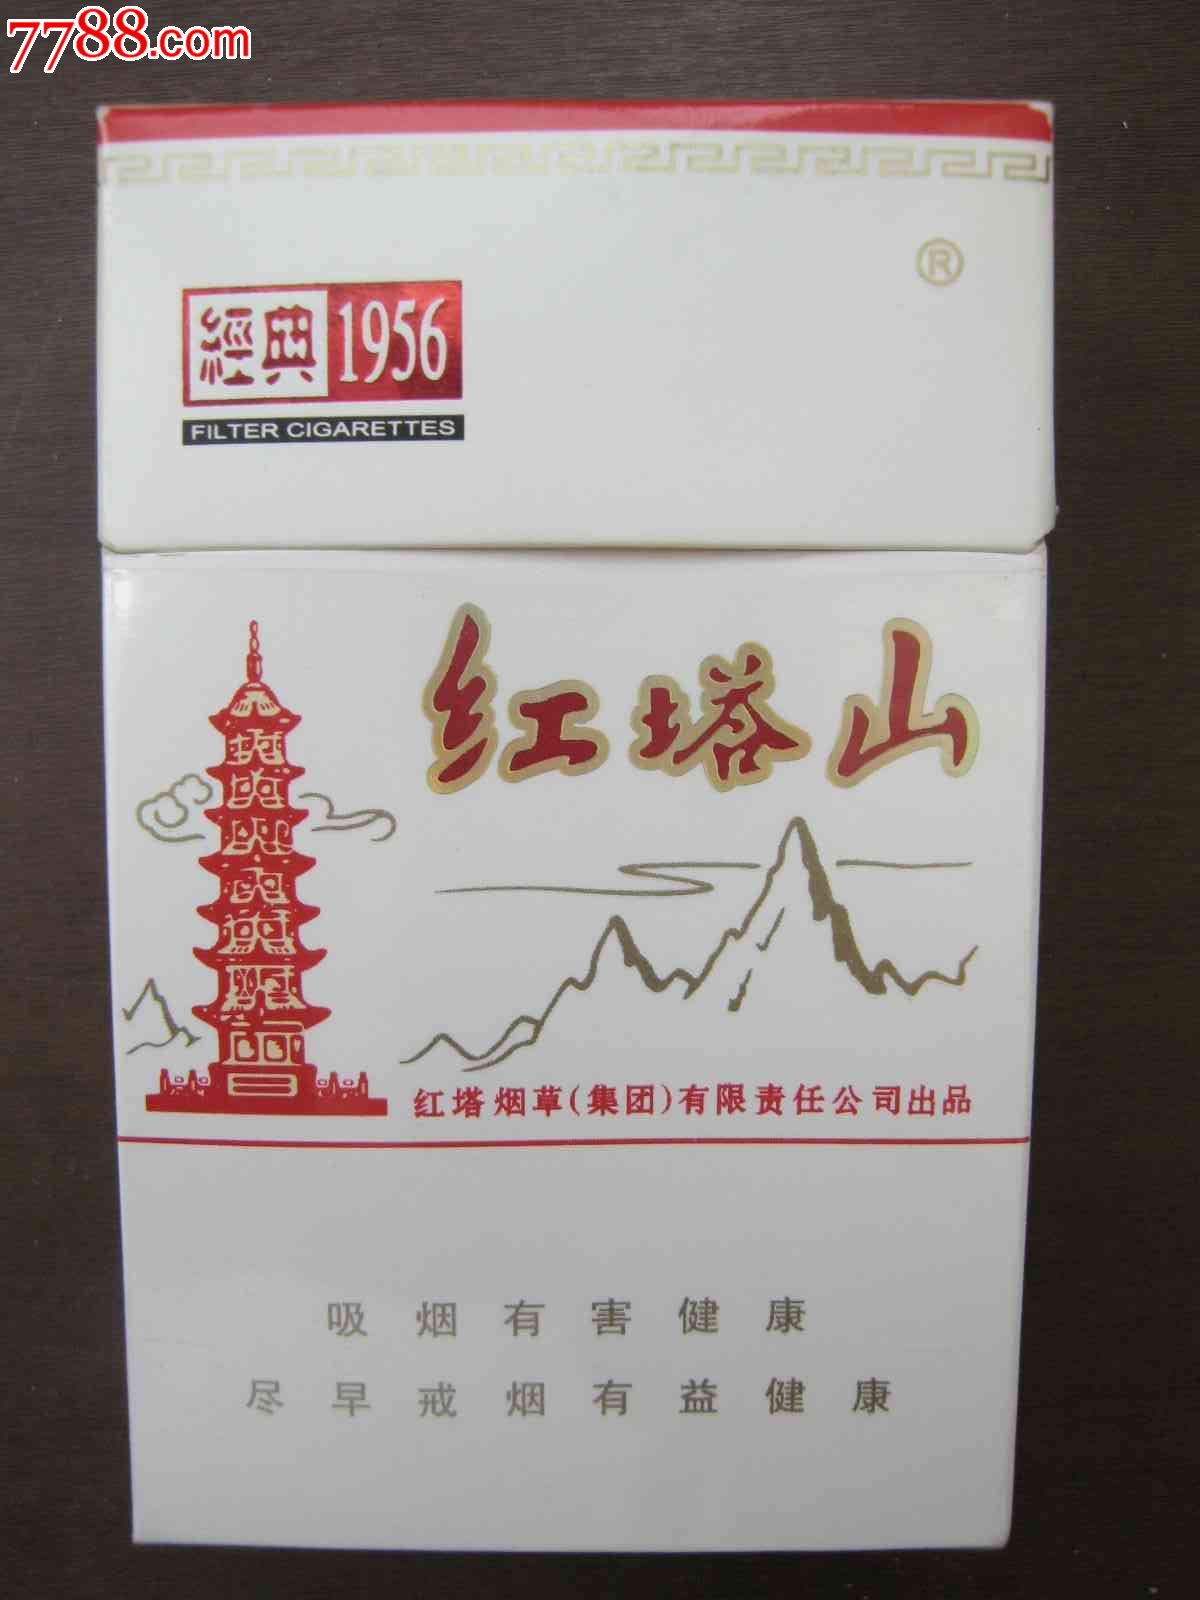 红塔山---经典1956-价格:1元-se25218516-烟标